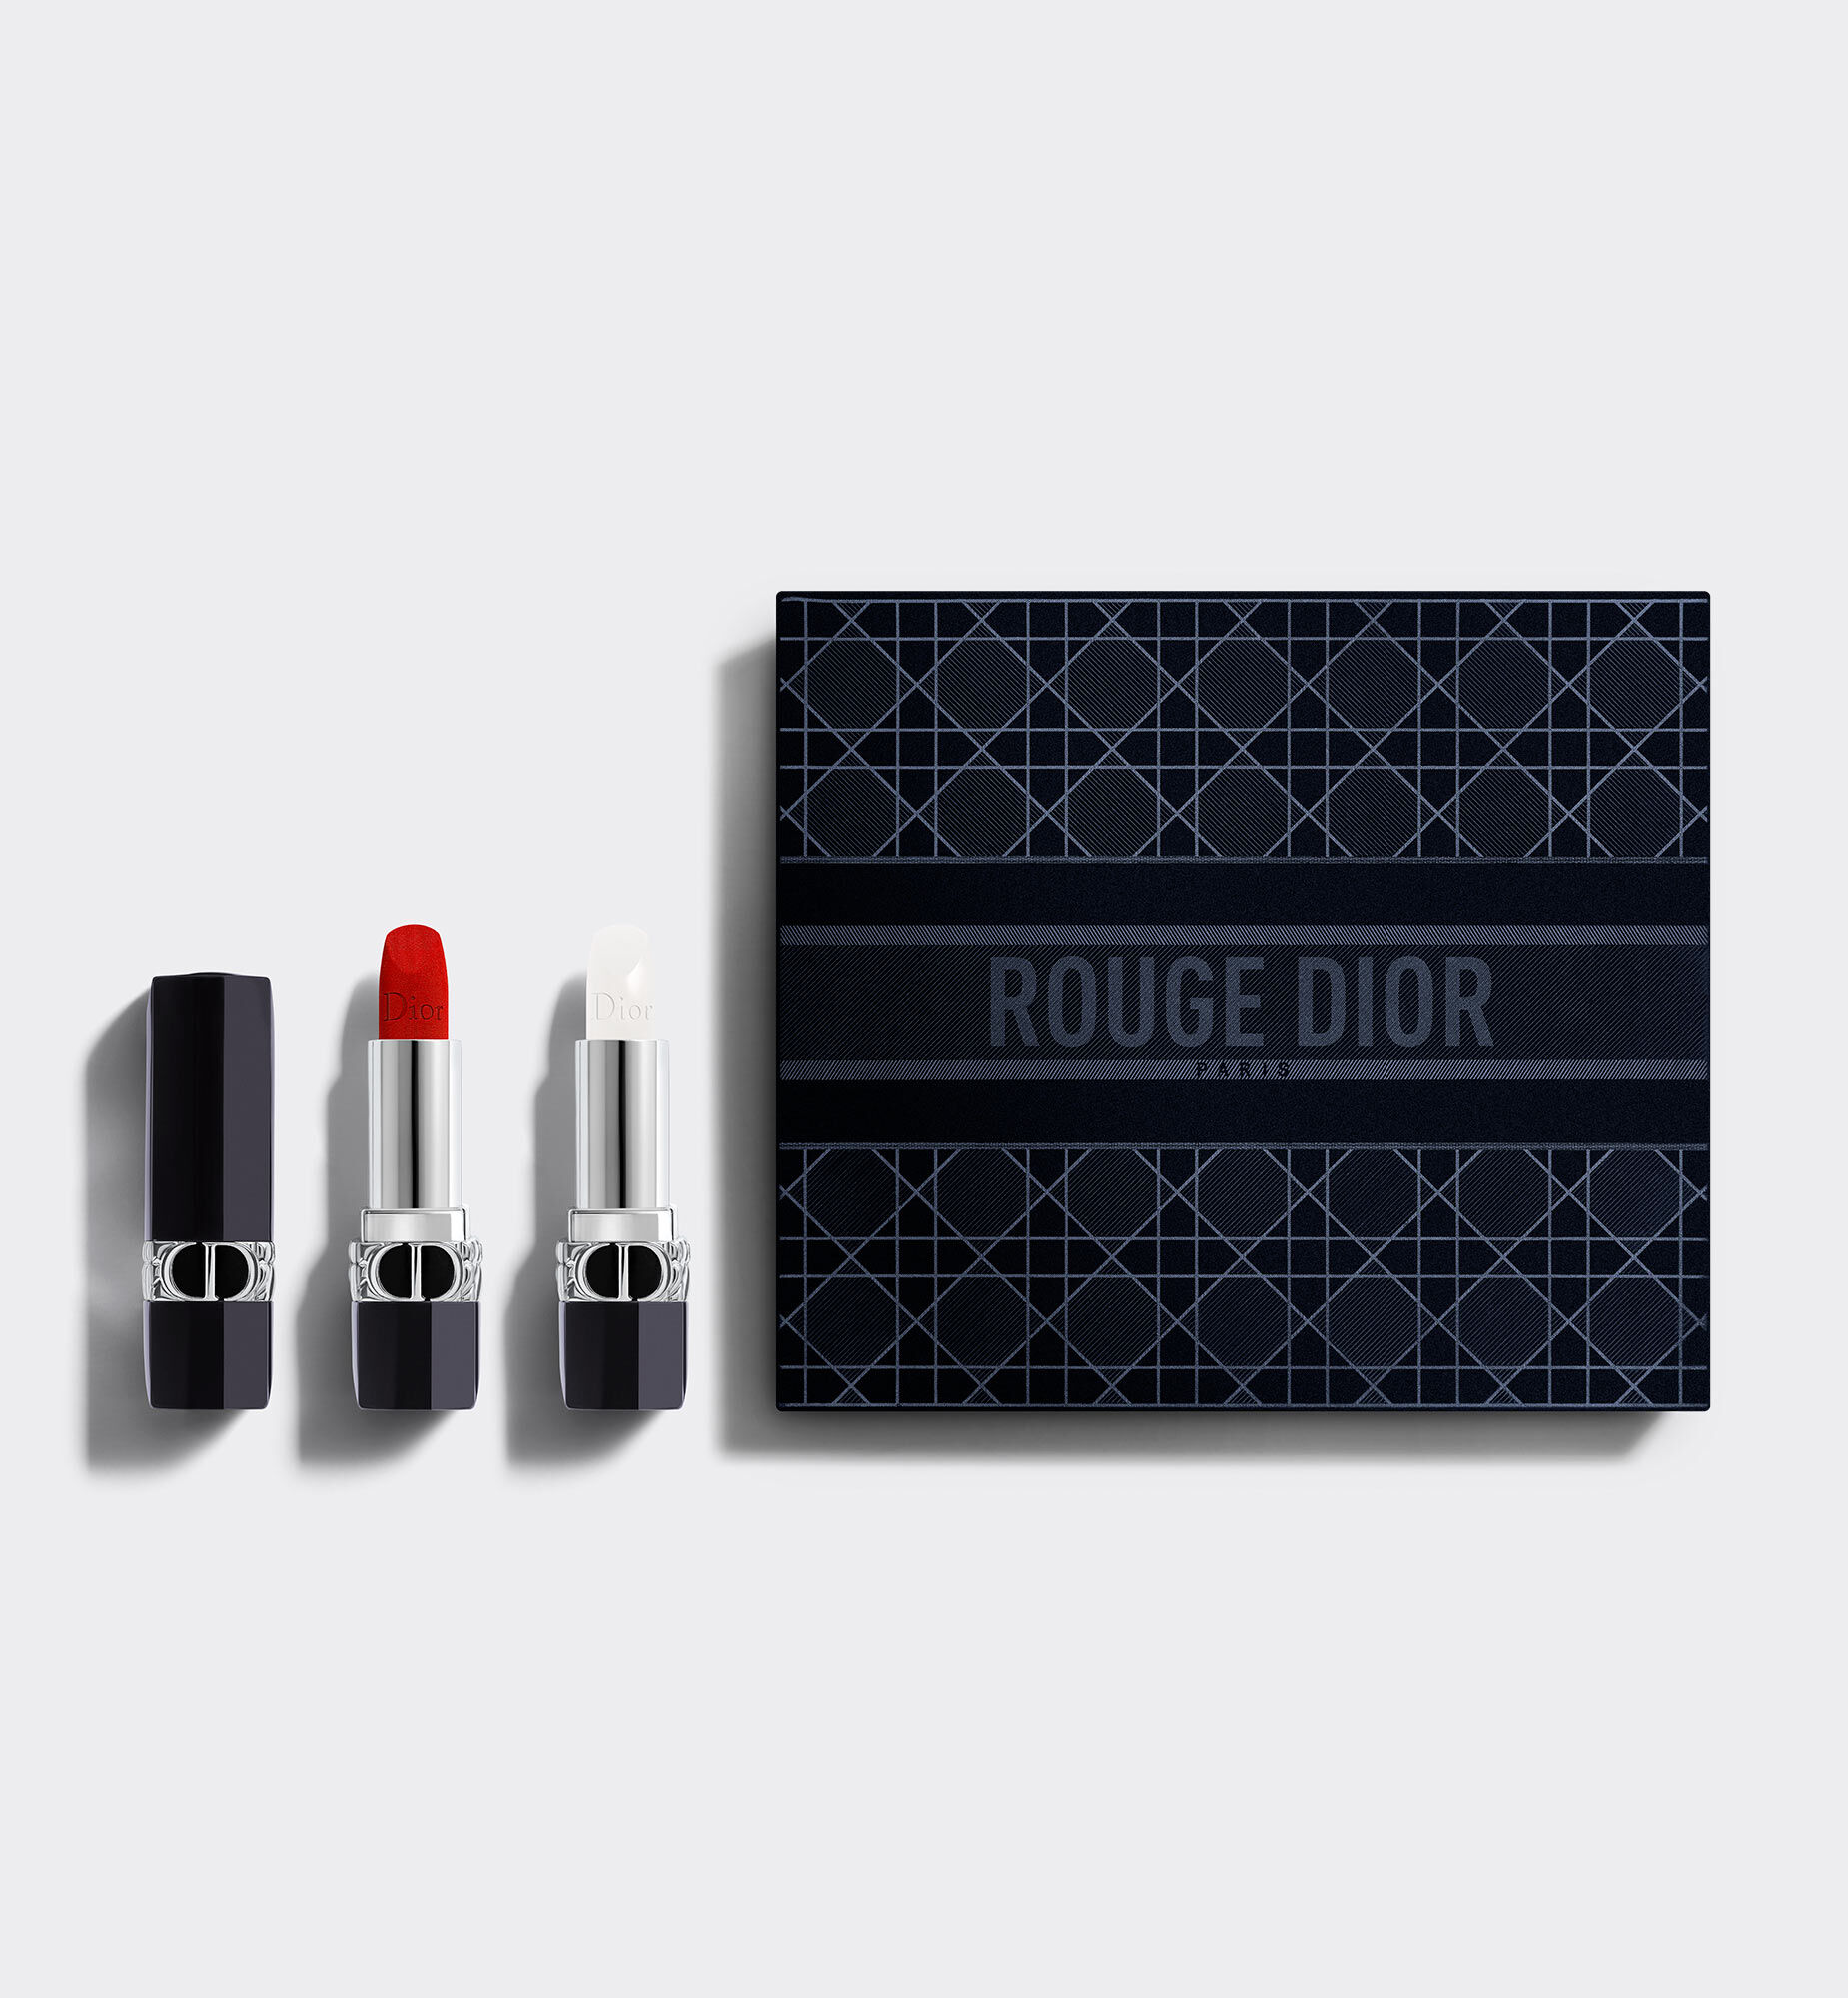 Gift Set Dior Rouge Velvet 999  Son Dưỡng Satin Balm 000 Diornatural  Thế  Giới Son Môi